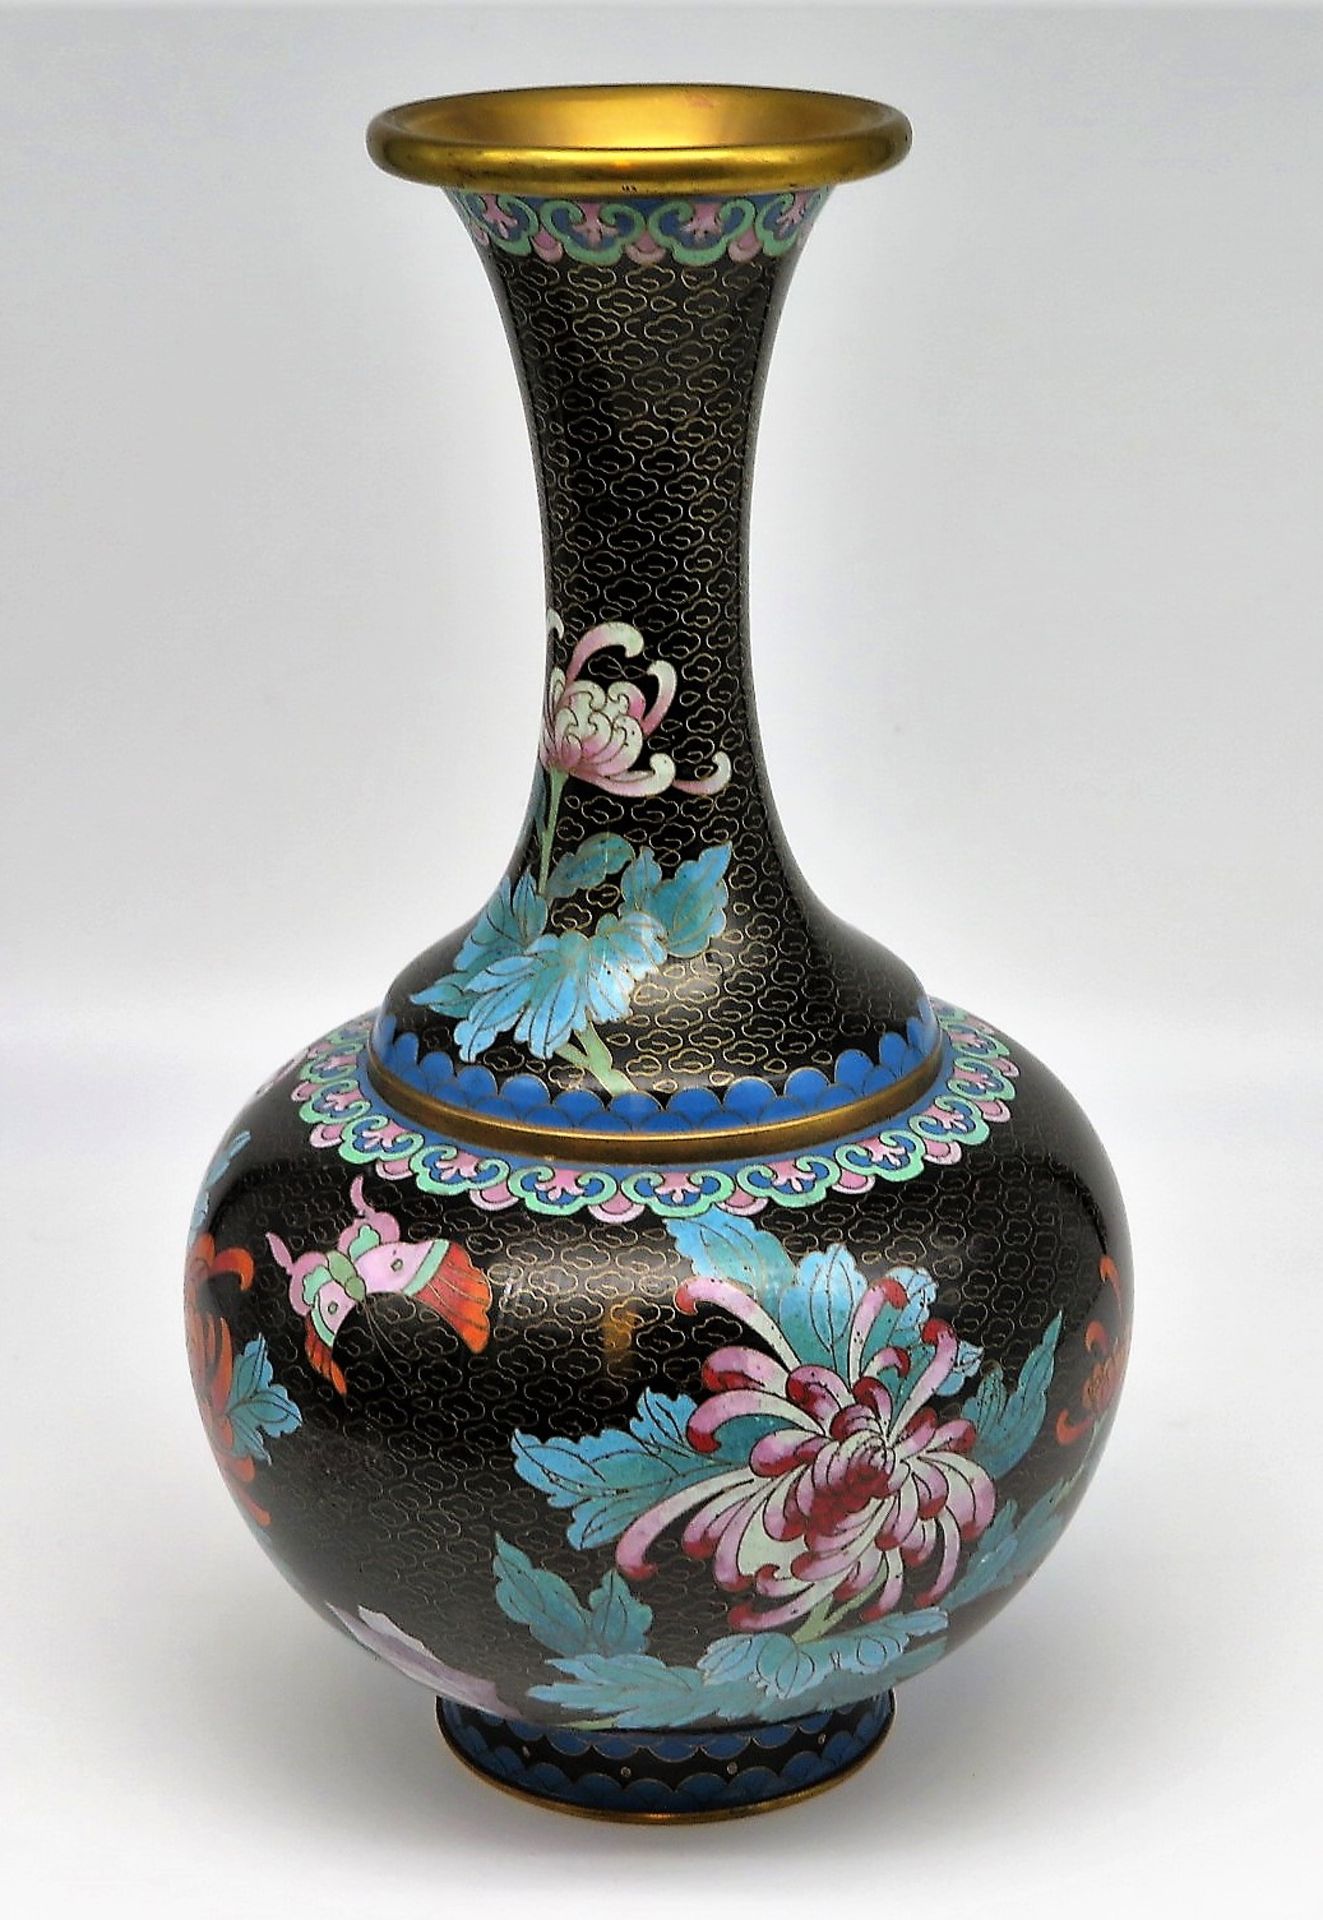 Cloisonné Vase, Japan, farbiger Zellenschmelz, Loch im Boden (für eventuelle Elektrifizierung), h 3 - Image 2 of 2